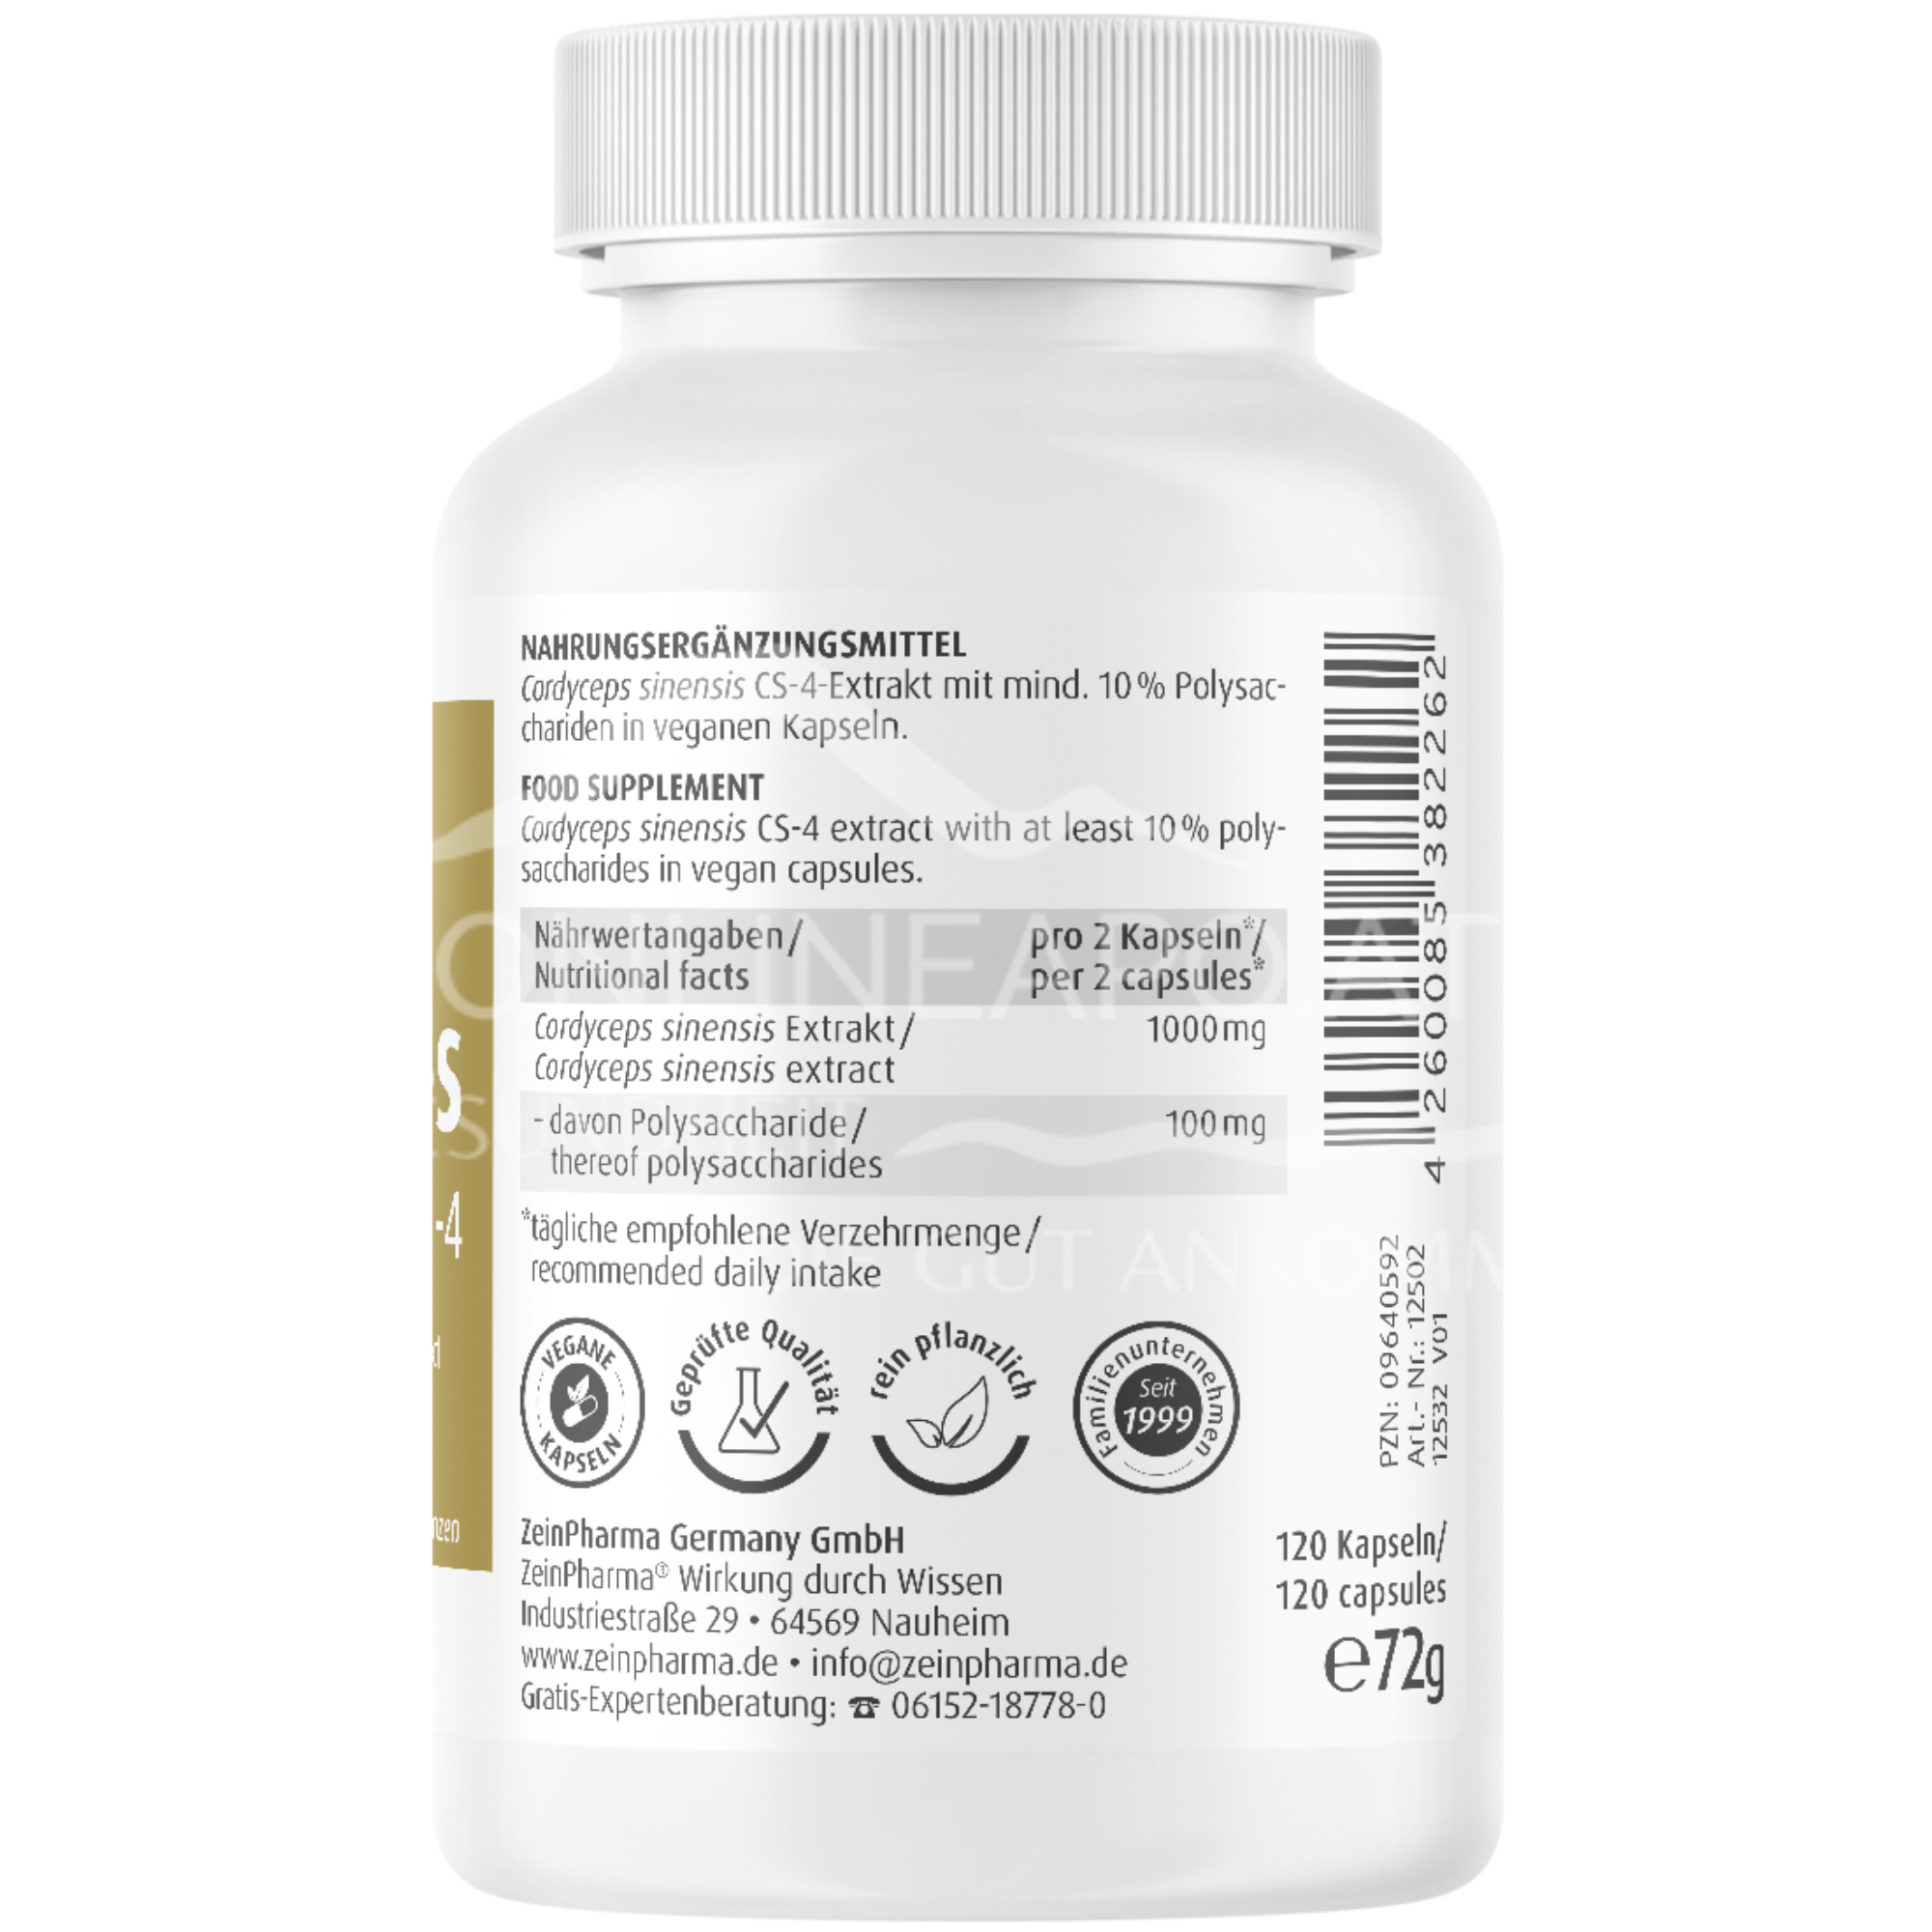 Zeinpharma Cordyceps CS-4 500 mg Kapseln